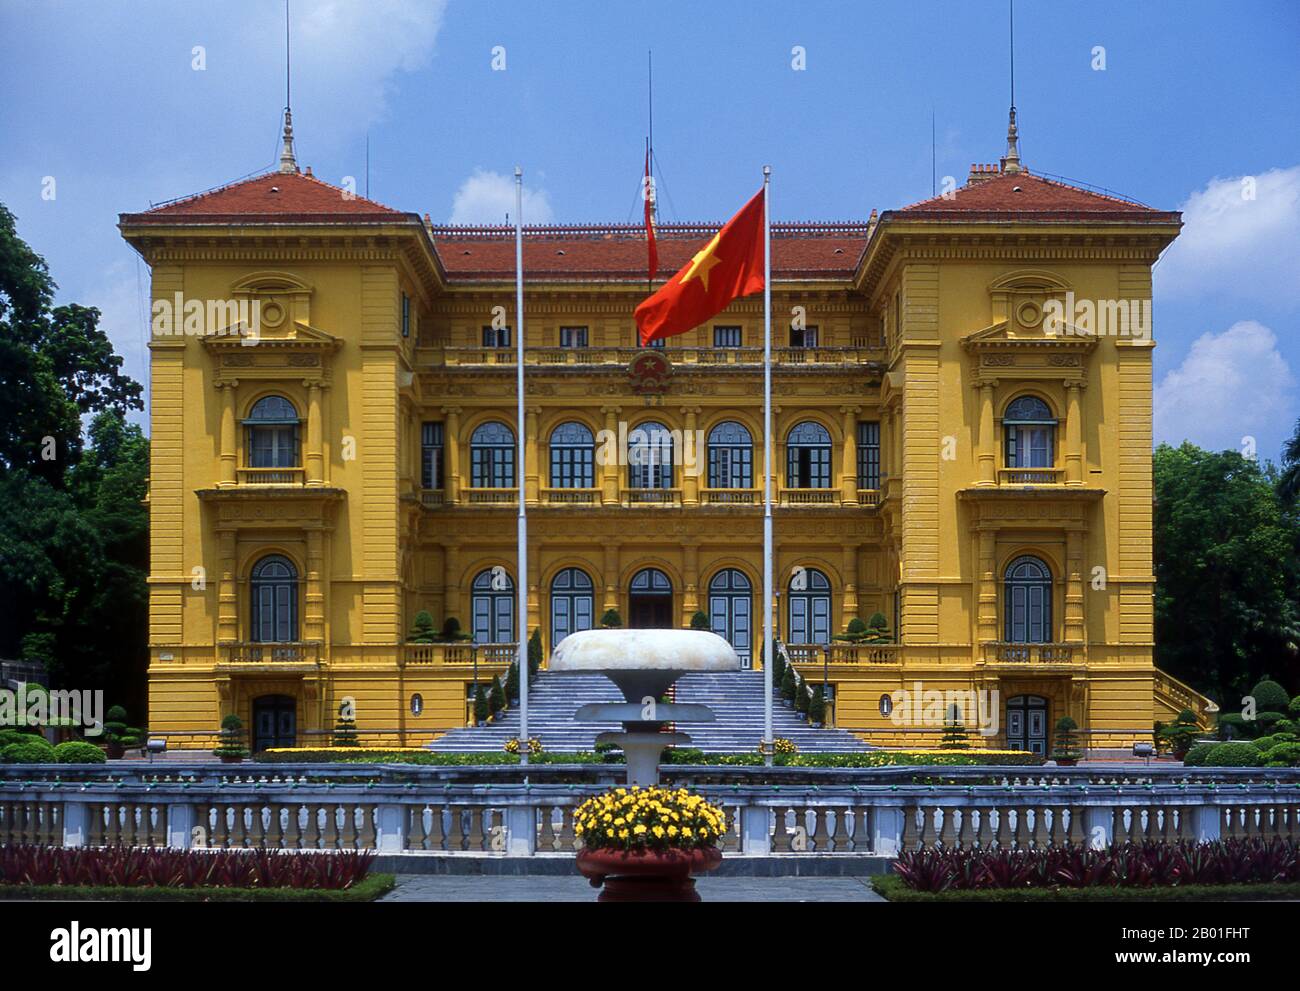 Vietnam: Der Präsidentenpalast, Hanoi. Der Präsidentenpalast wurde 1901 für Paul Doumer, den damaligen Gouverneur der französischen Indochina, errichtet. Mit dunklen senffarbenen Steinarbeiten gestrichen, mit grünen Fenstern und Schlitzläden, die in Vietnam so beliebt sind, wird es jetzt hauptsächlich für den Empfang von Würdenträgern und Staatsoberhäuptern eingesetzt. Der vietnamesische Nationalheld Ho Chi Minh, der 1954 Präsident der Demokratischen Republik Vietnam wurde, weigerte sich, hier zu leben. Seinem Biografen Duiker zufolge: „Er lehnte ein Angebot seiner Kollegen ab, im Palast des Generalgouverneurs zu leben...“ Stockfoto